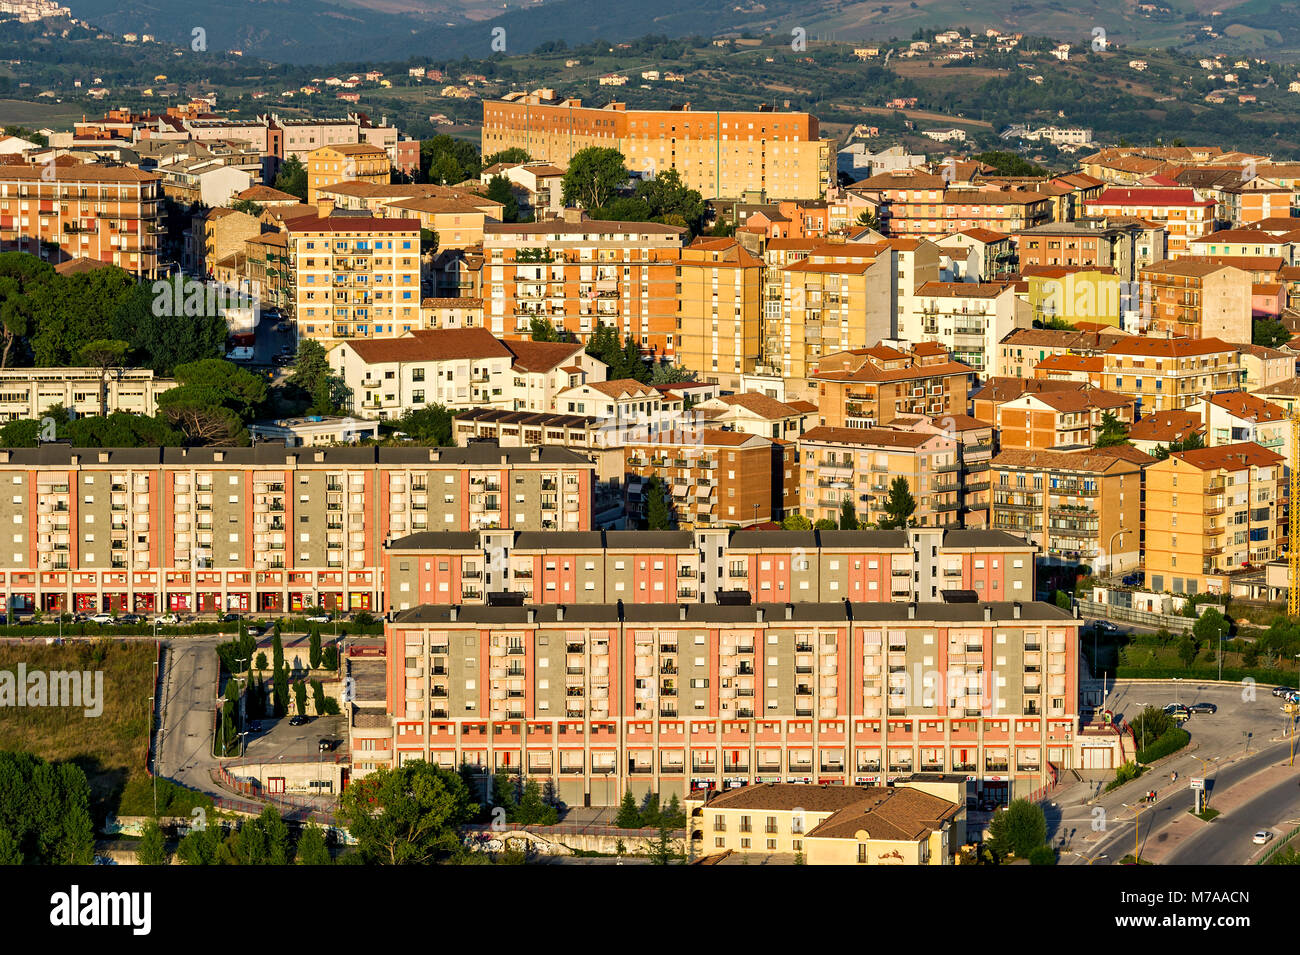 Vista desde el castillo Monforte hasta modernos bloques de pisos, Campobasso, Molise, Italia Foto de stock